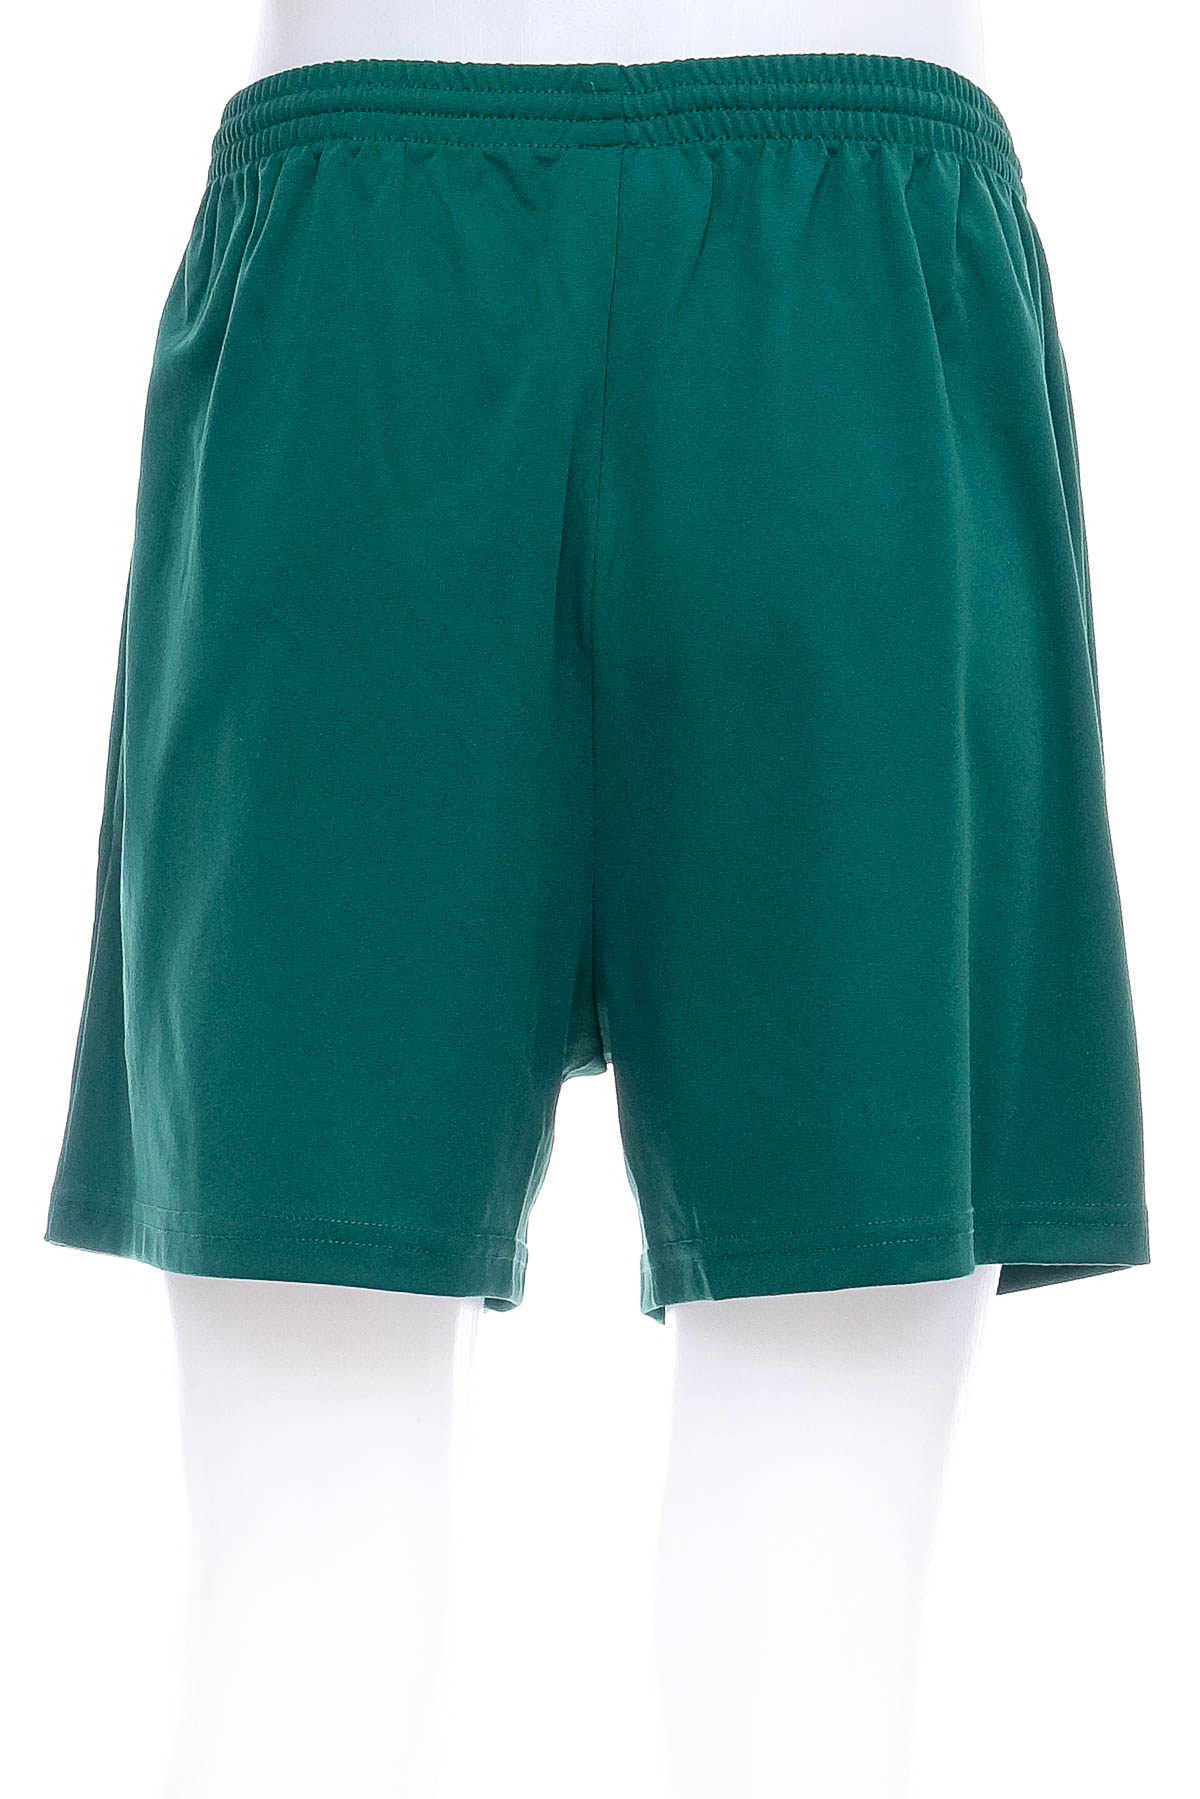 Men's shorts - Masita - 1